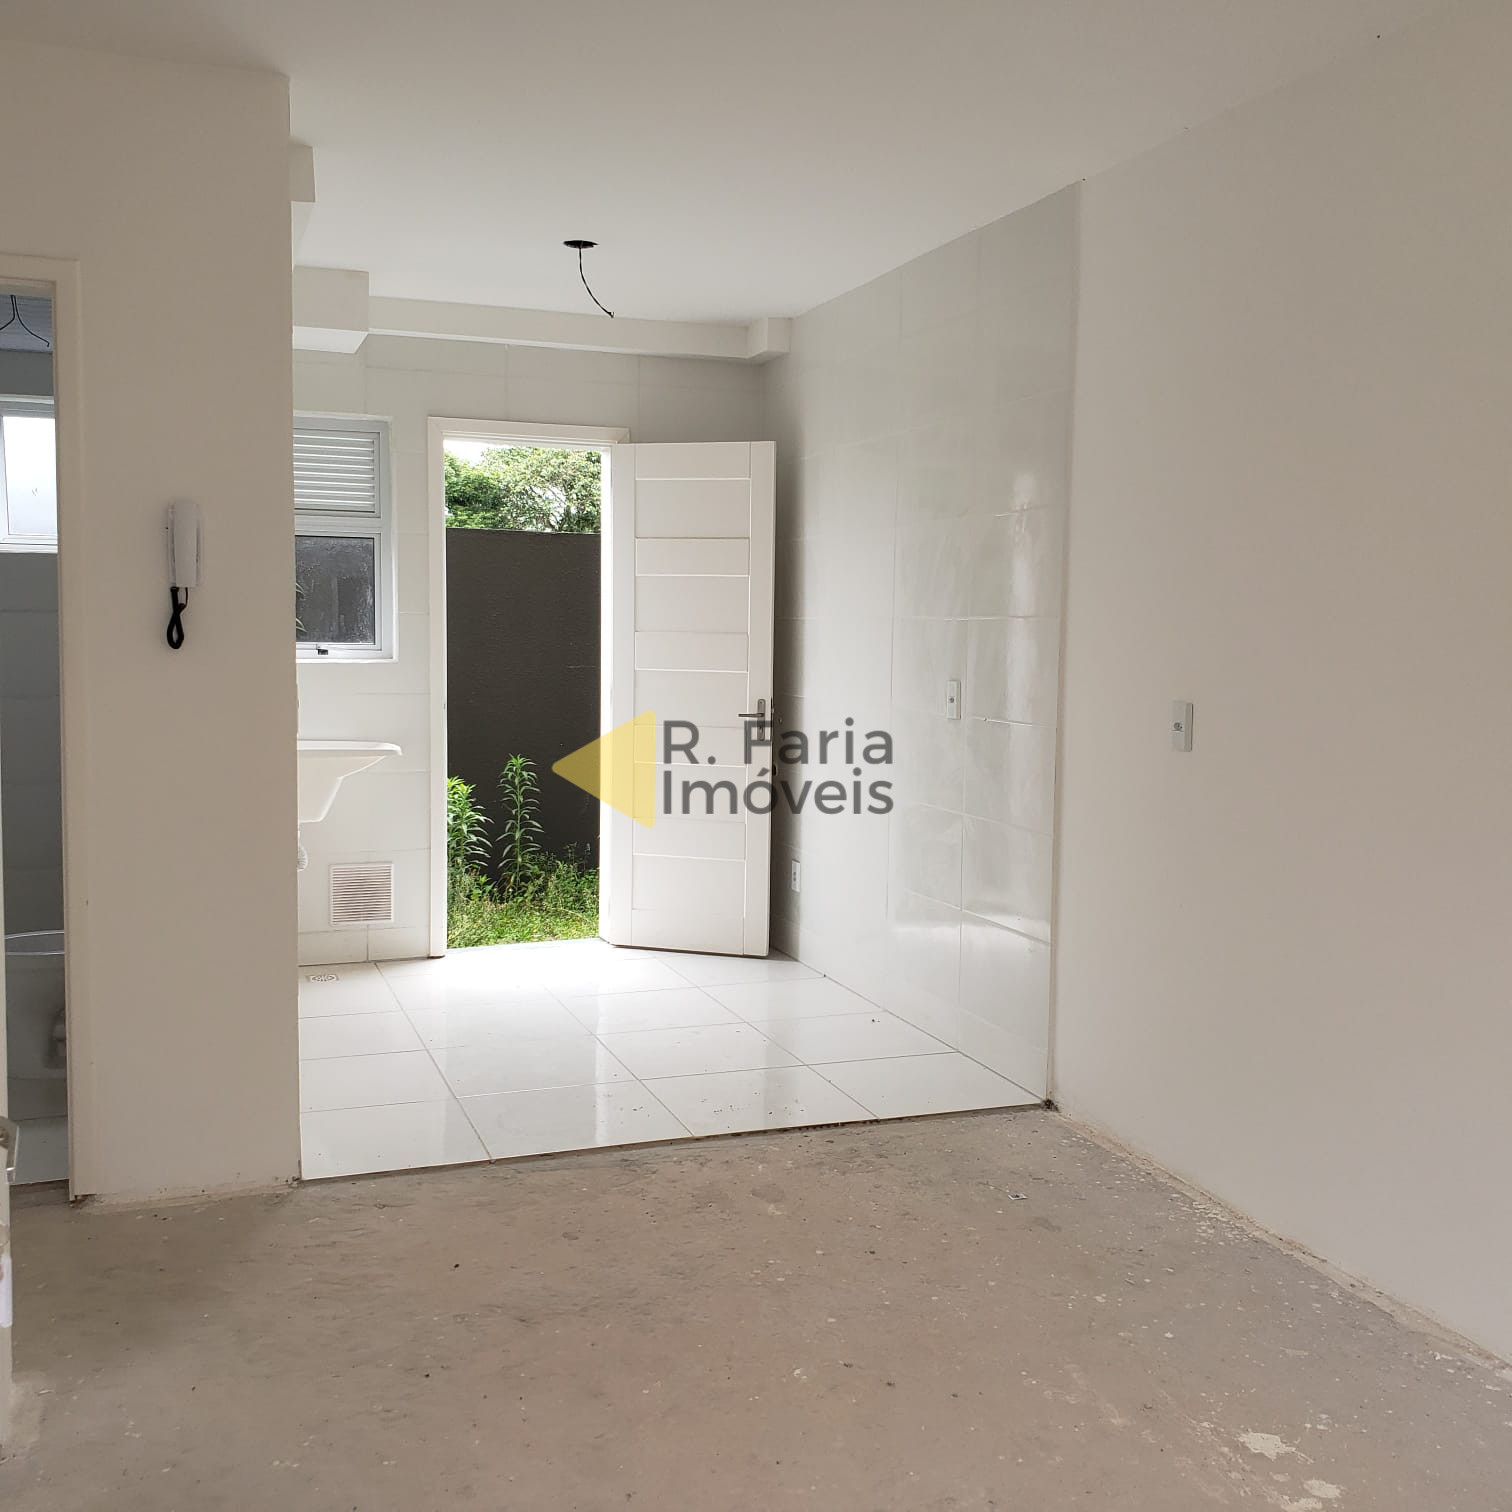 Apartamento à venda com 2 dormitórios, 1 vaga, 45 m² por R$ 225.000,00 -  Campina da Barra - Araucária/PR - Alô Imóveis